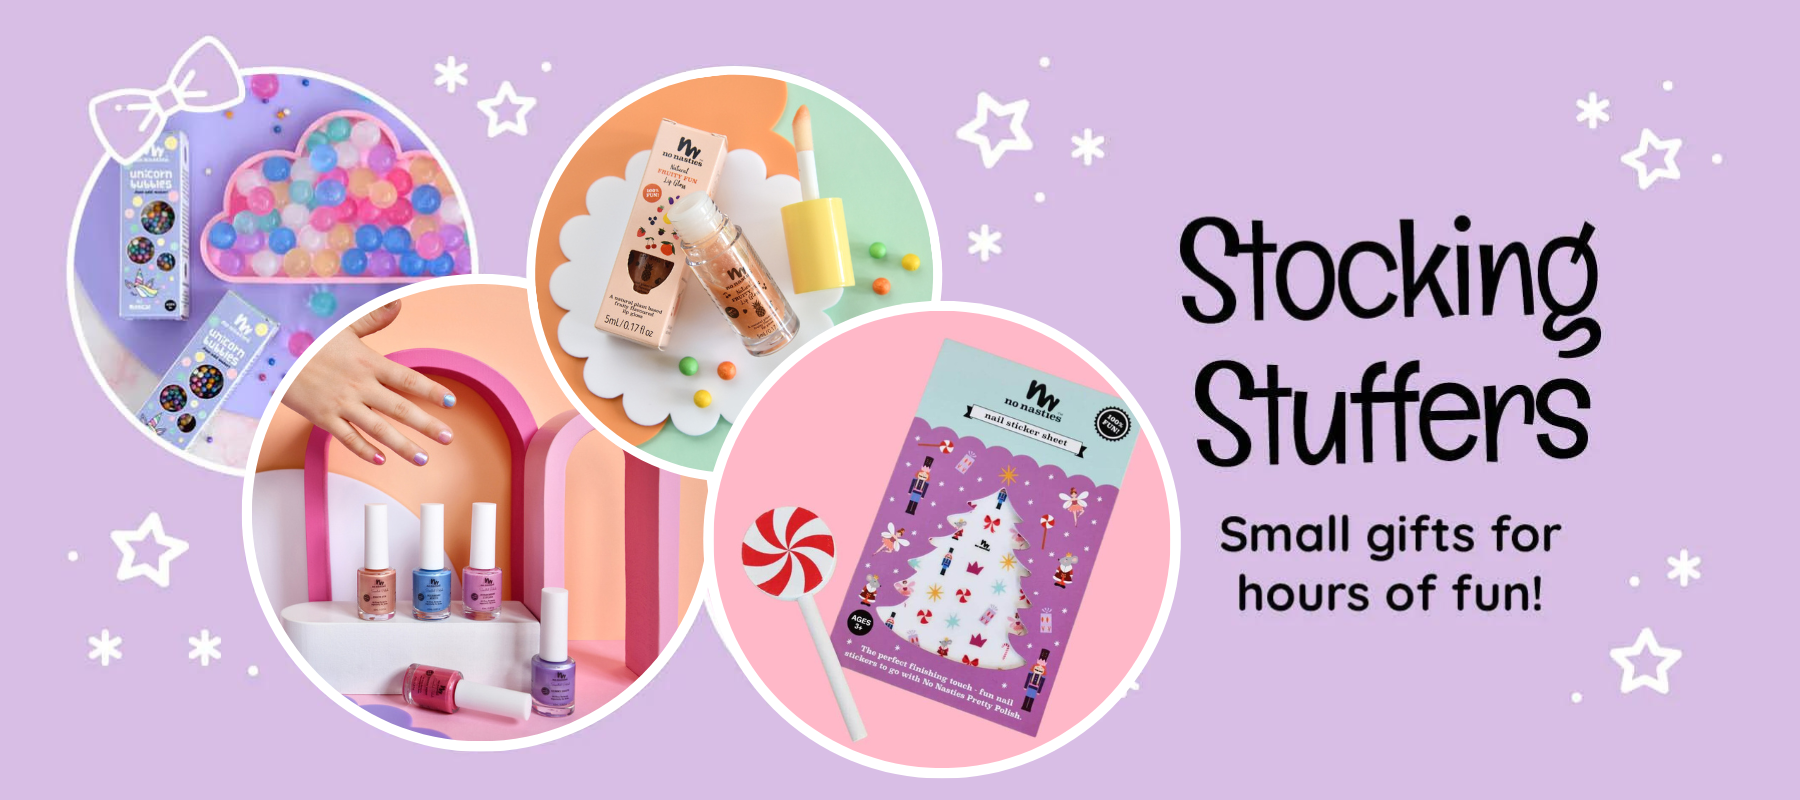 stocking stuffers kids love nail polish lip gloss and Unicorn bubbles on purple background